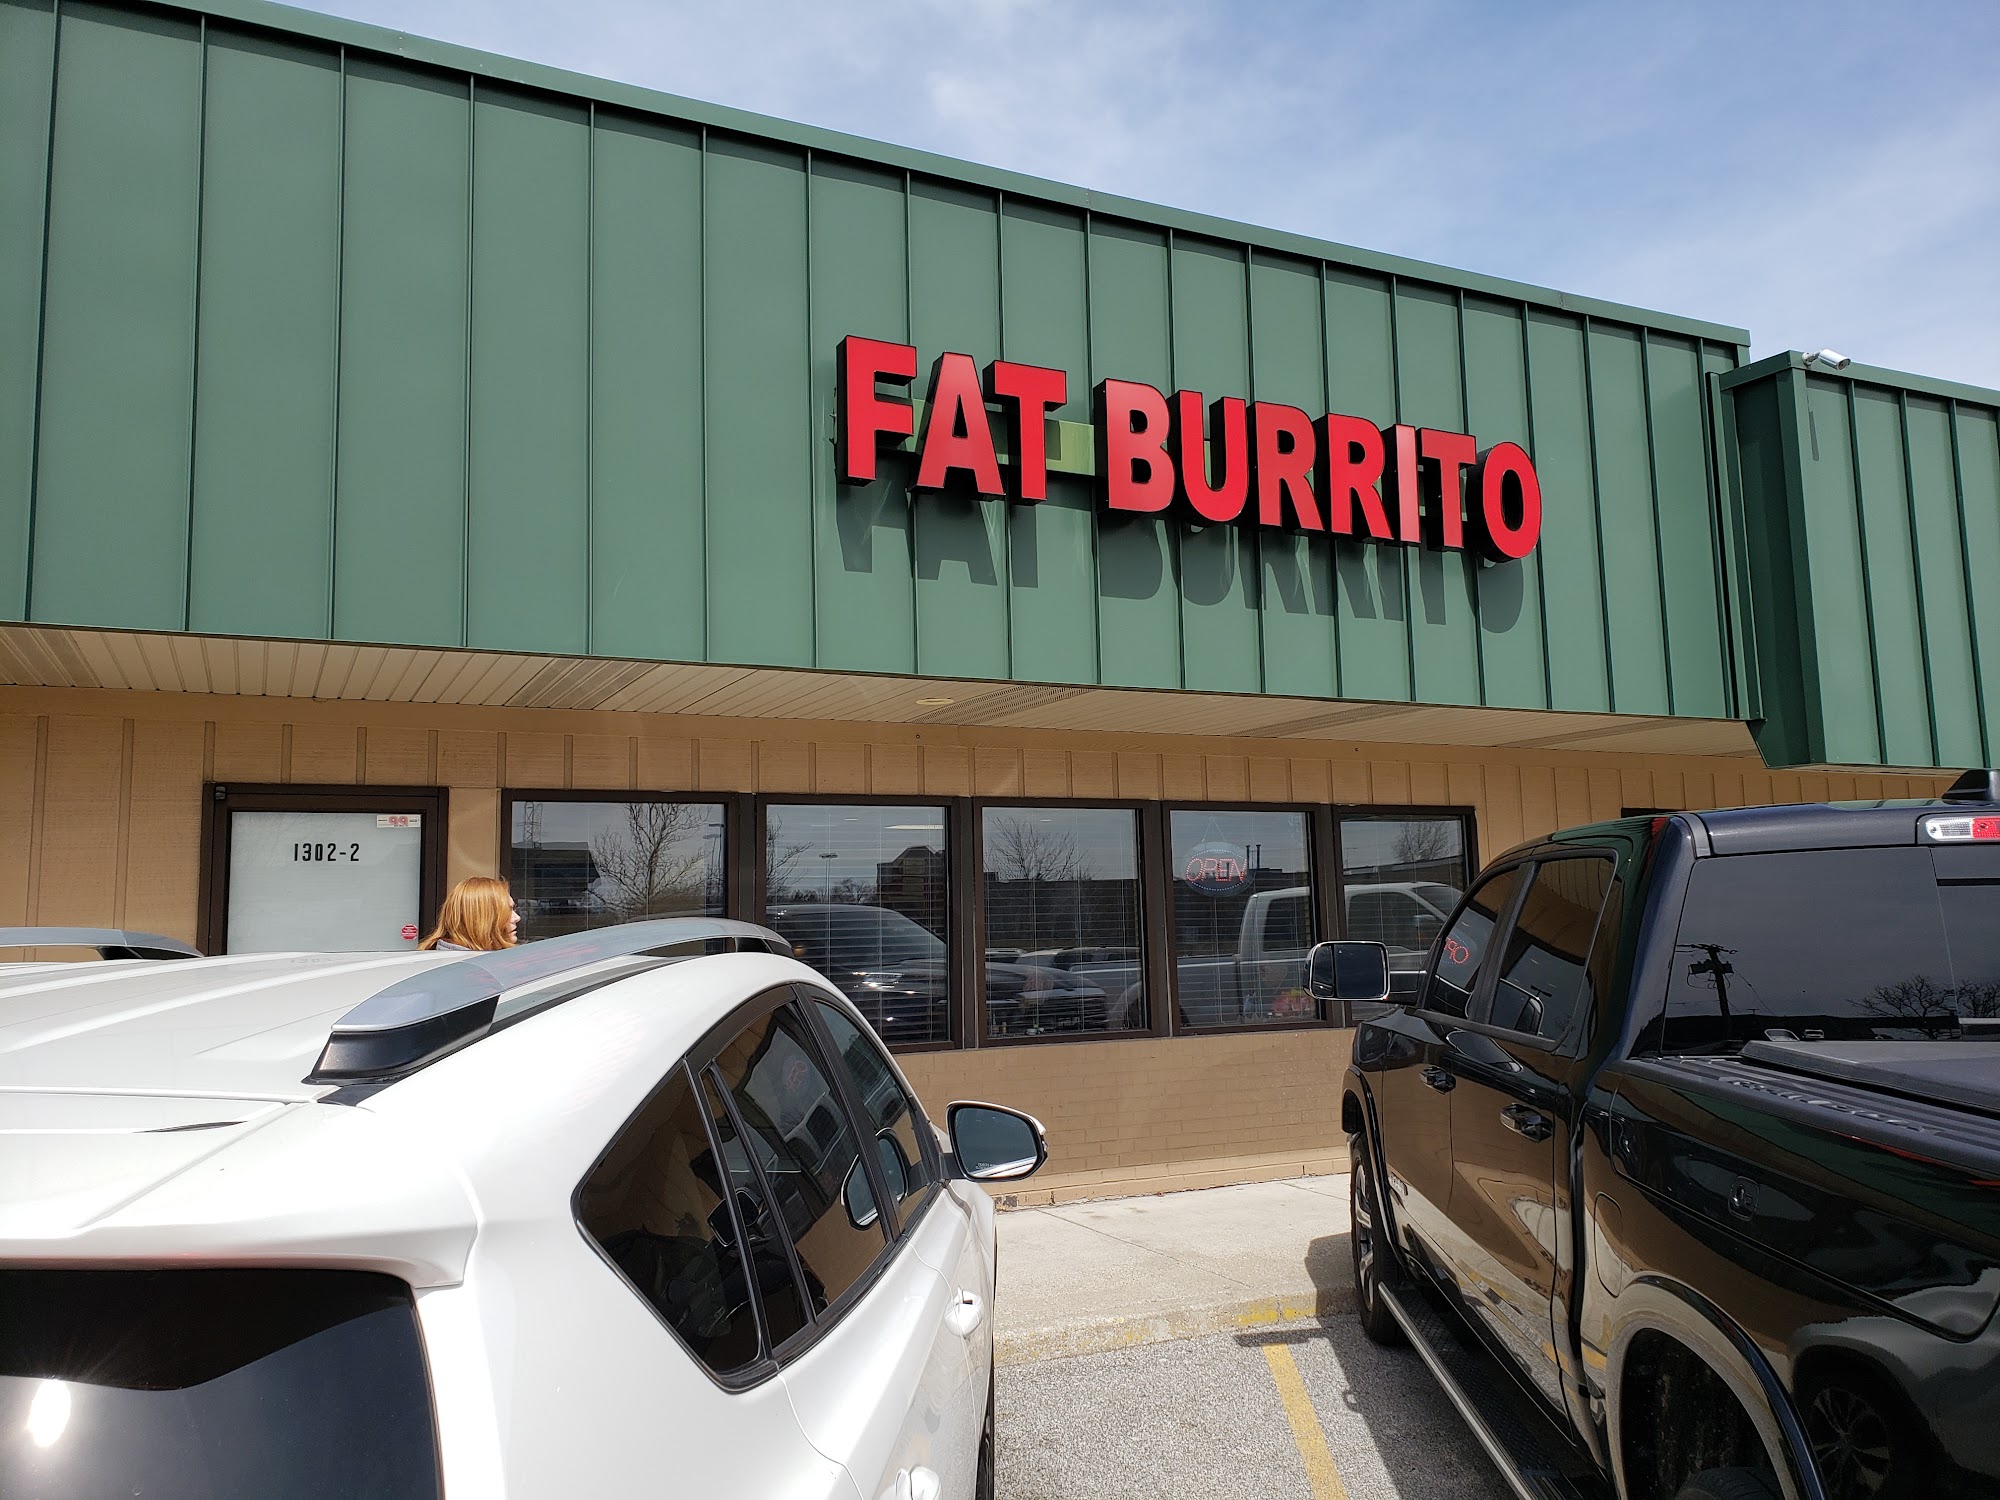 Fat Burrito